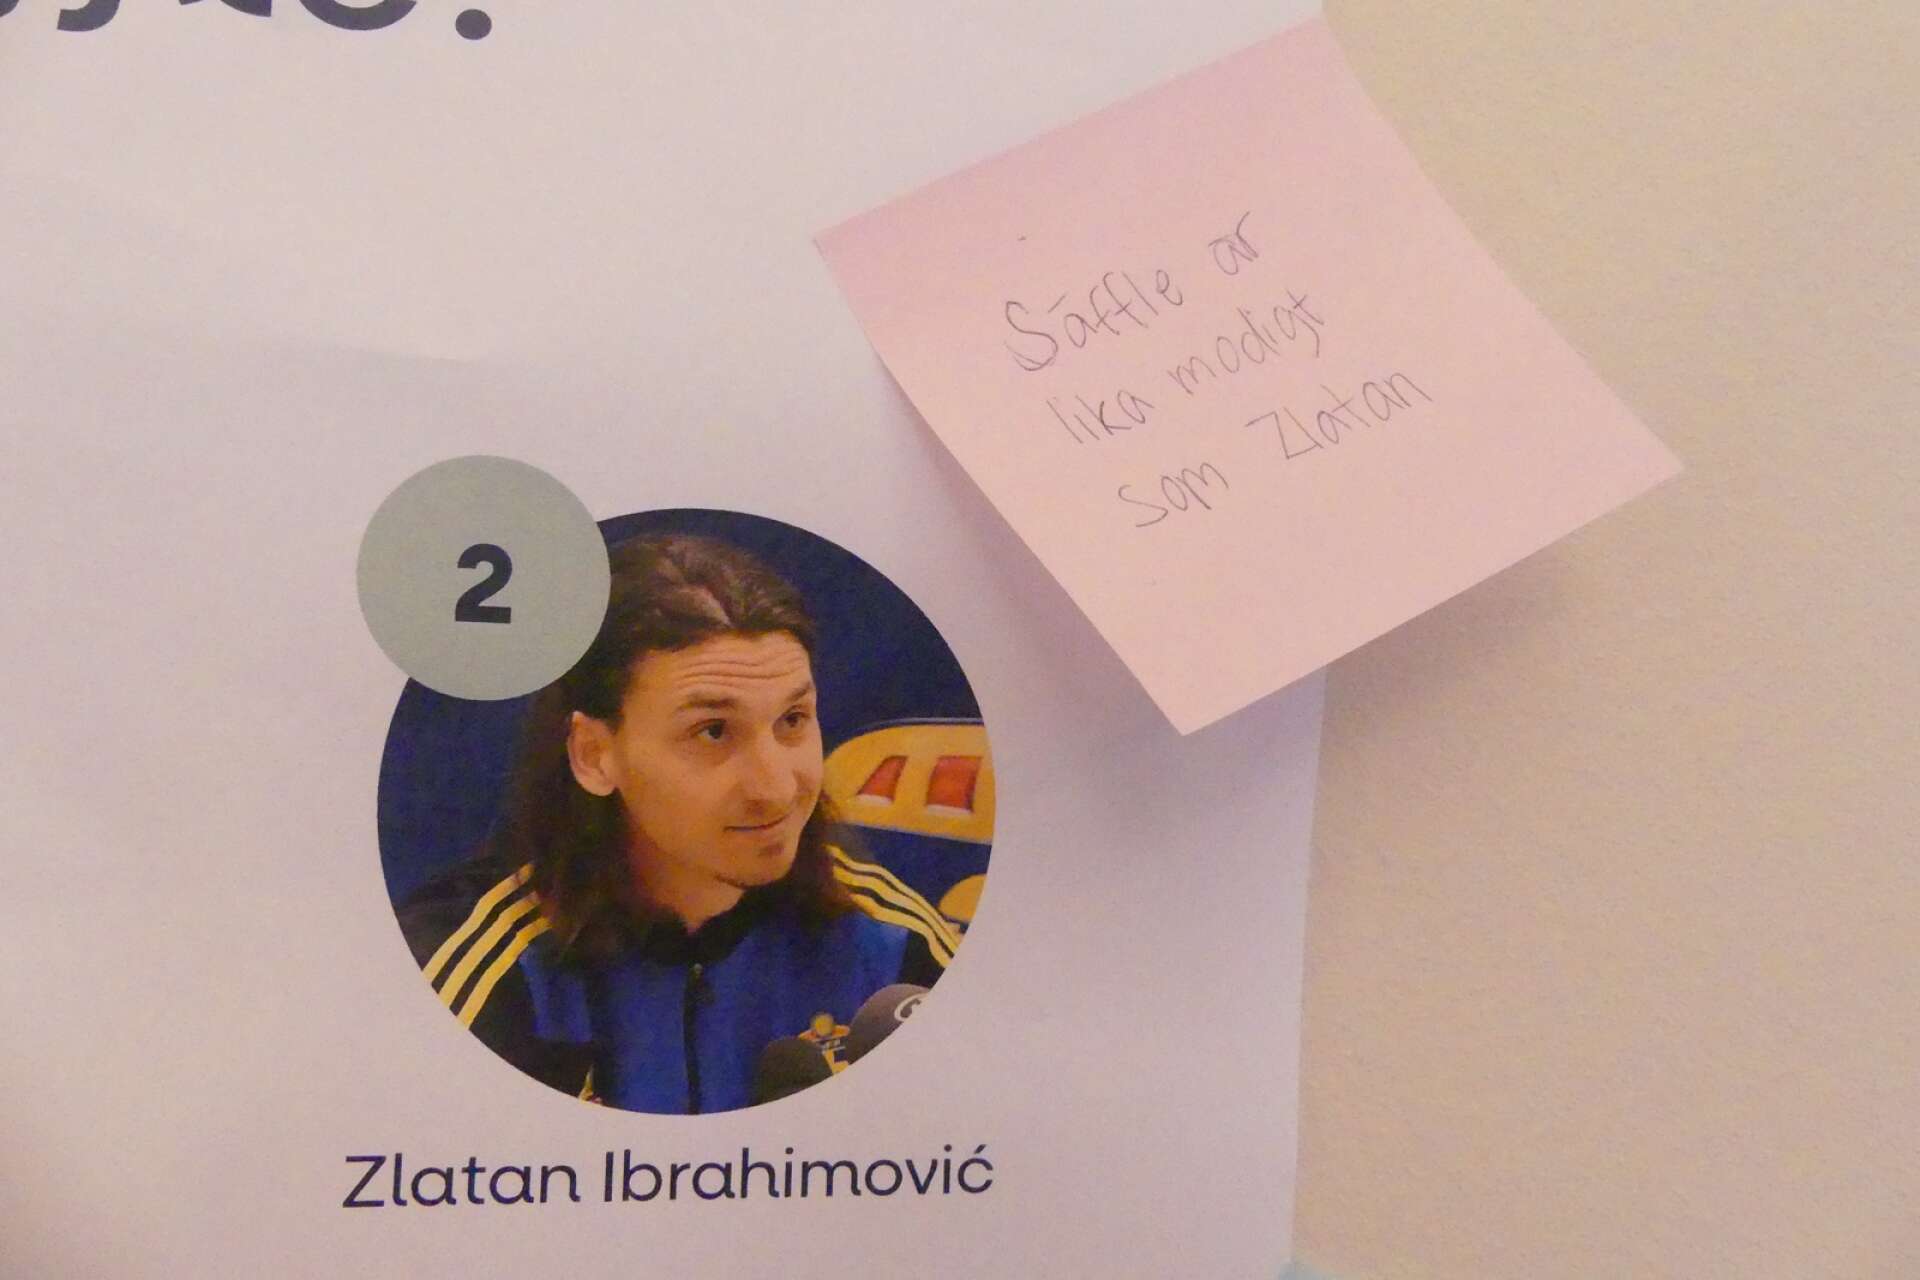 Är Säffle lika modigt som Zlatan? Det tror i alla fall en deltagare under presentationen att Zlatan själv hade sagt.